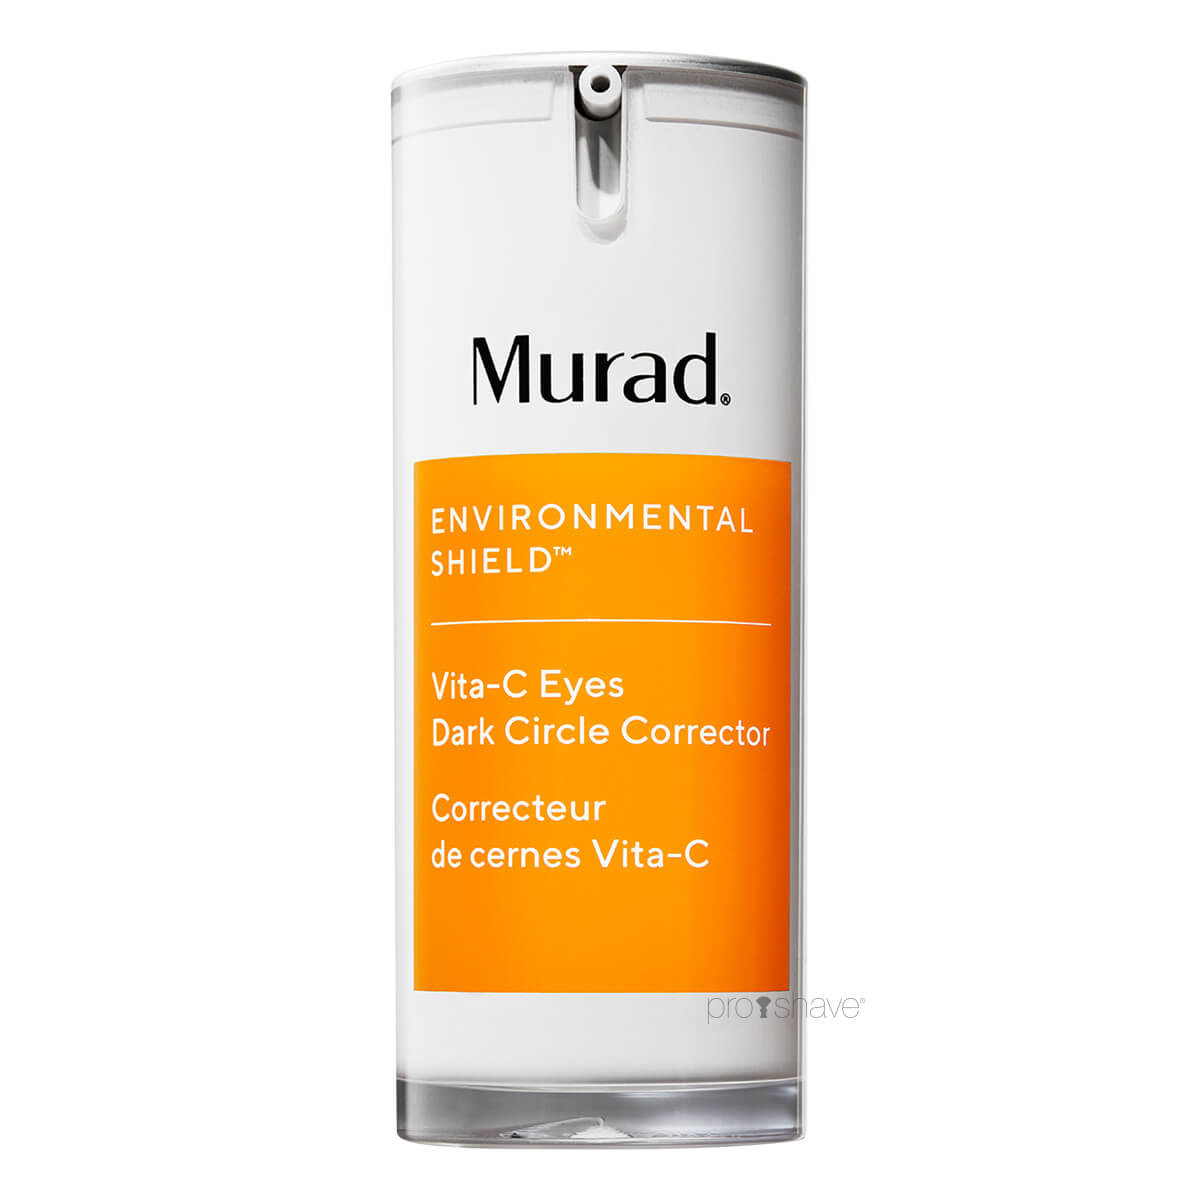 Se Murad Vita-C Eyes Dark Circle Corrector, Environmental Shield, 15 ml. hos Proshave